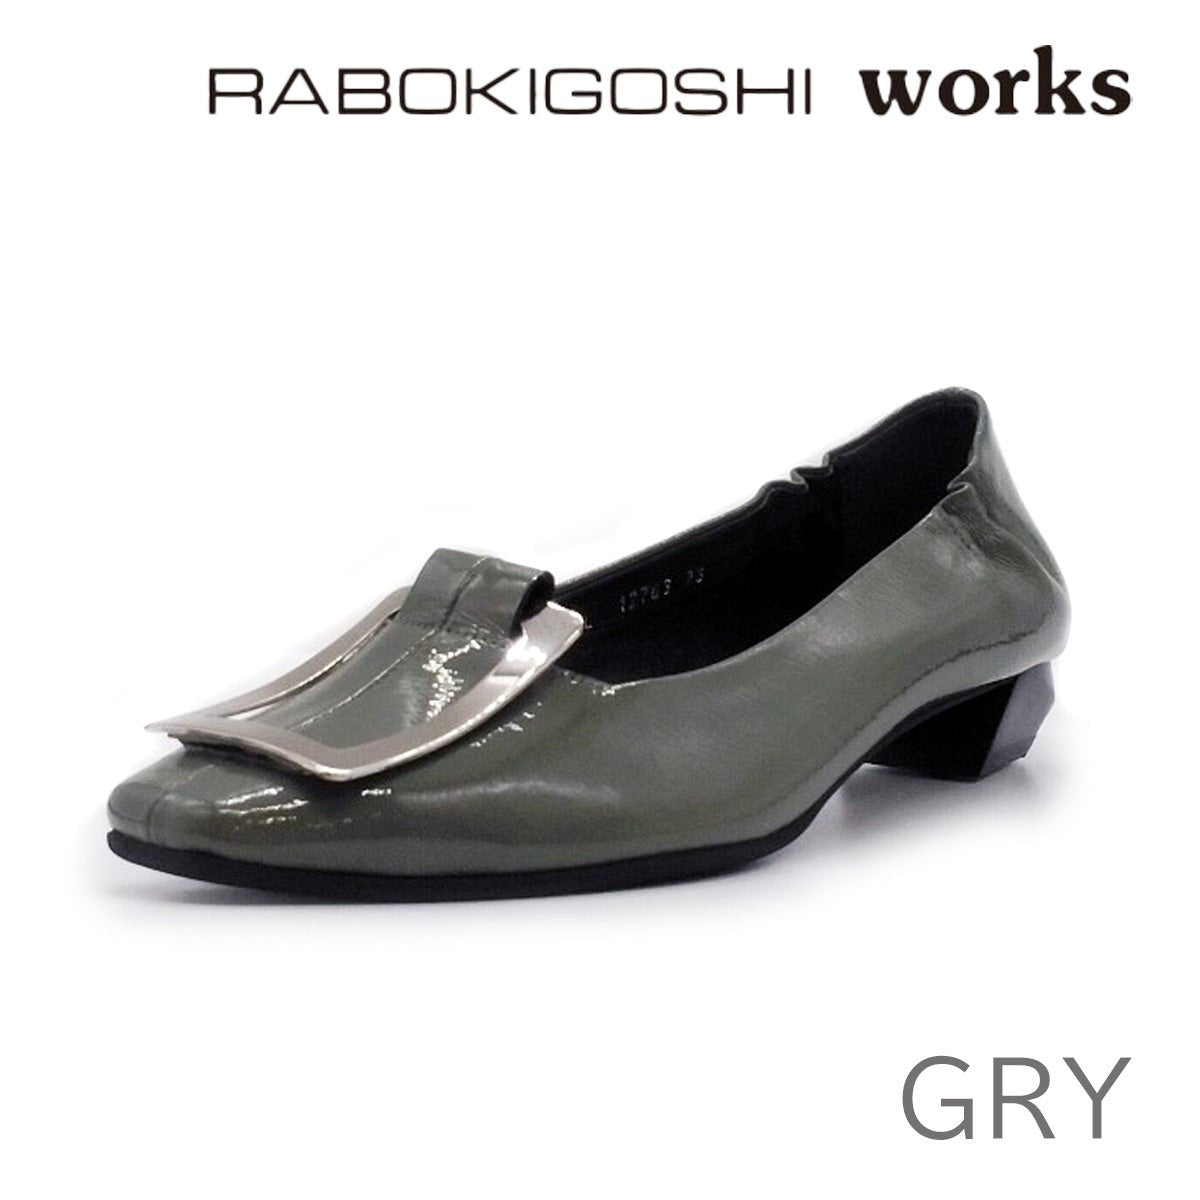 RABOKIGOSHI works ラボキゴシ ワークス レディース パンプス 12763 靴 - RABOKIGOSHI works(ラボキゴシ ワークス) - 202シューズモリ オンラインショップ